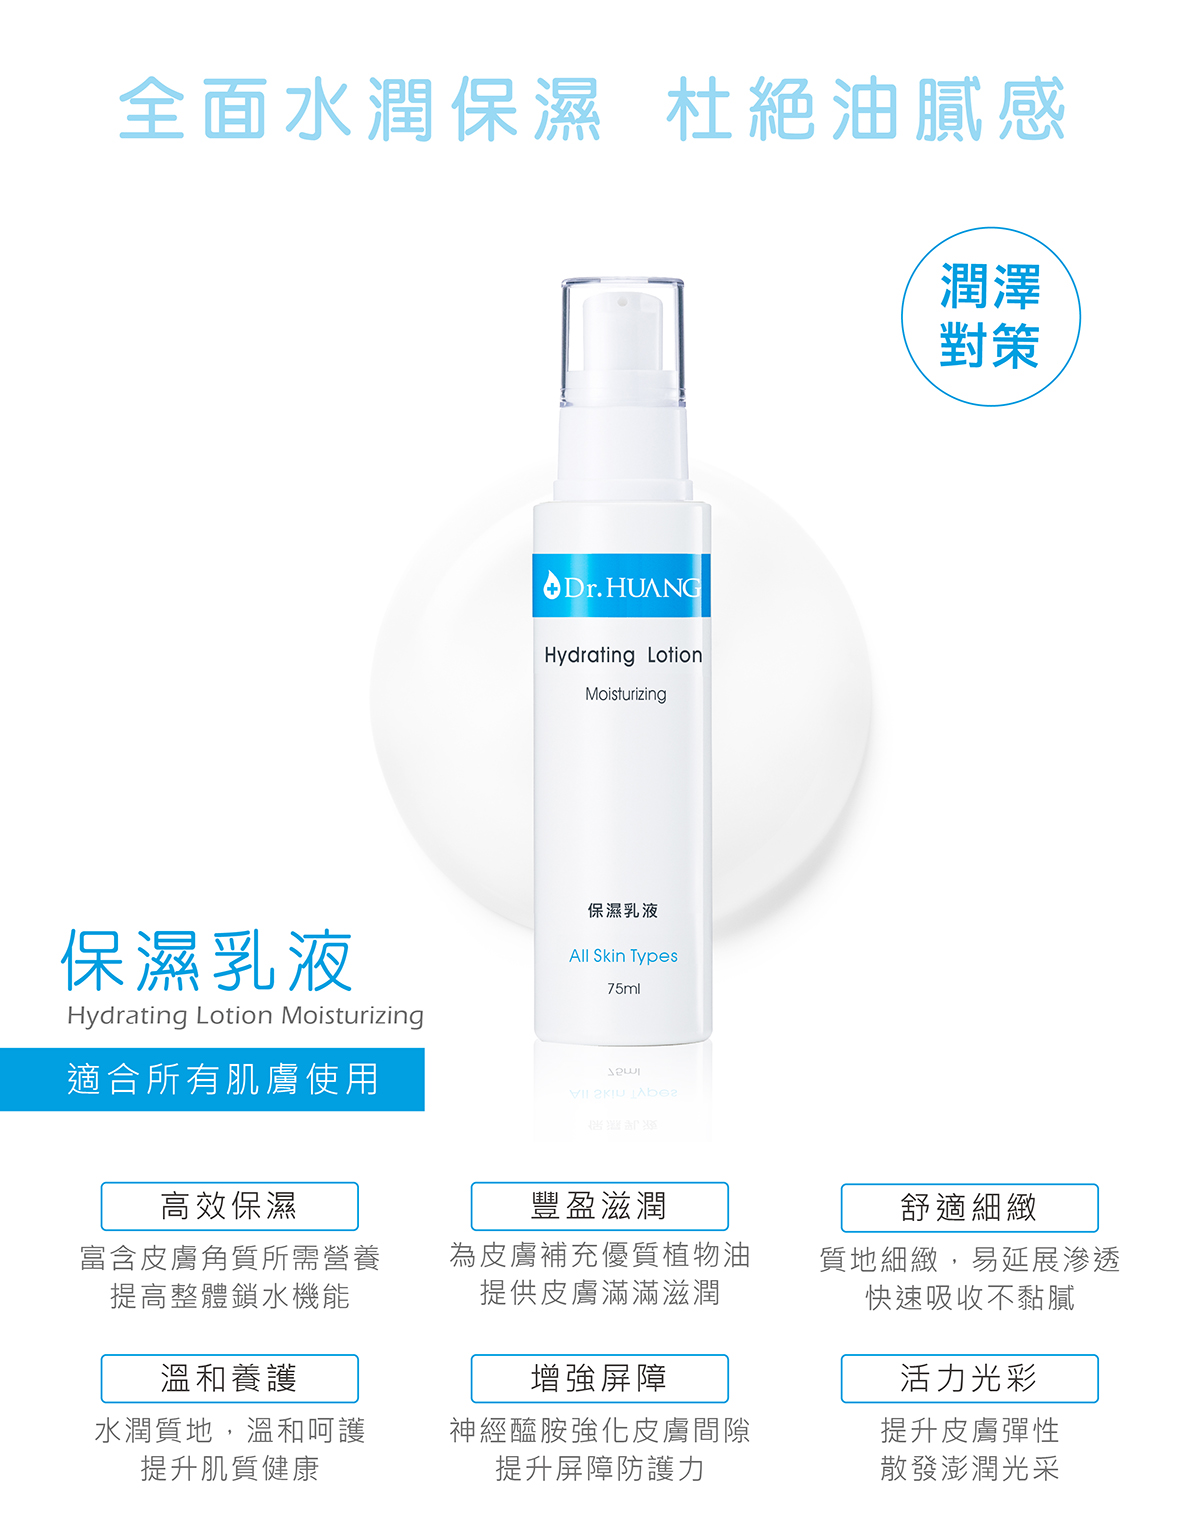 Dr.HUANG保濕系列保濕乳液適合所有膚質使用高效保濕豐盈滋潤舒適細緻